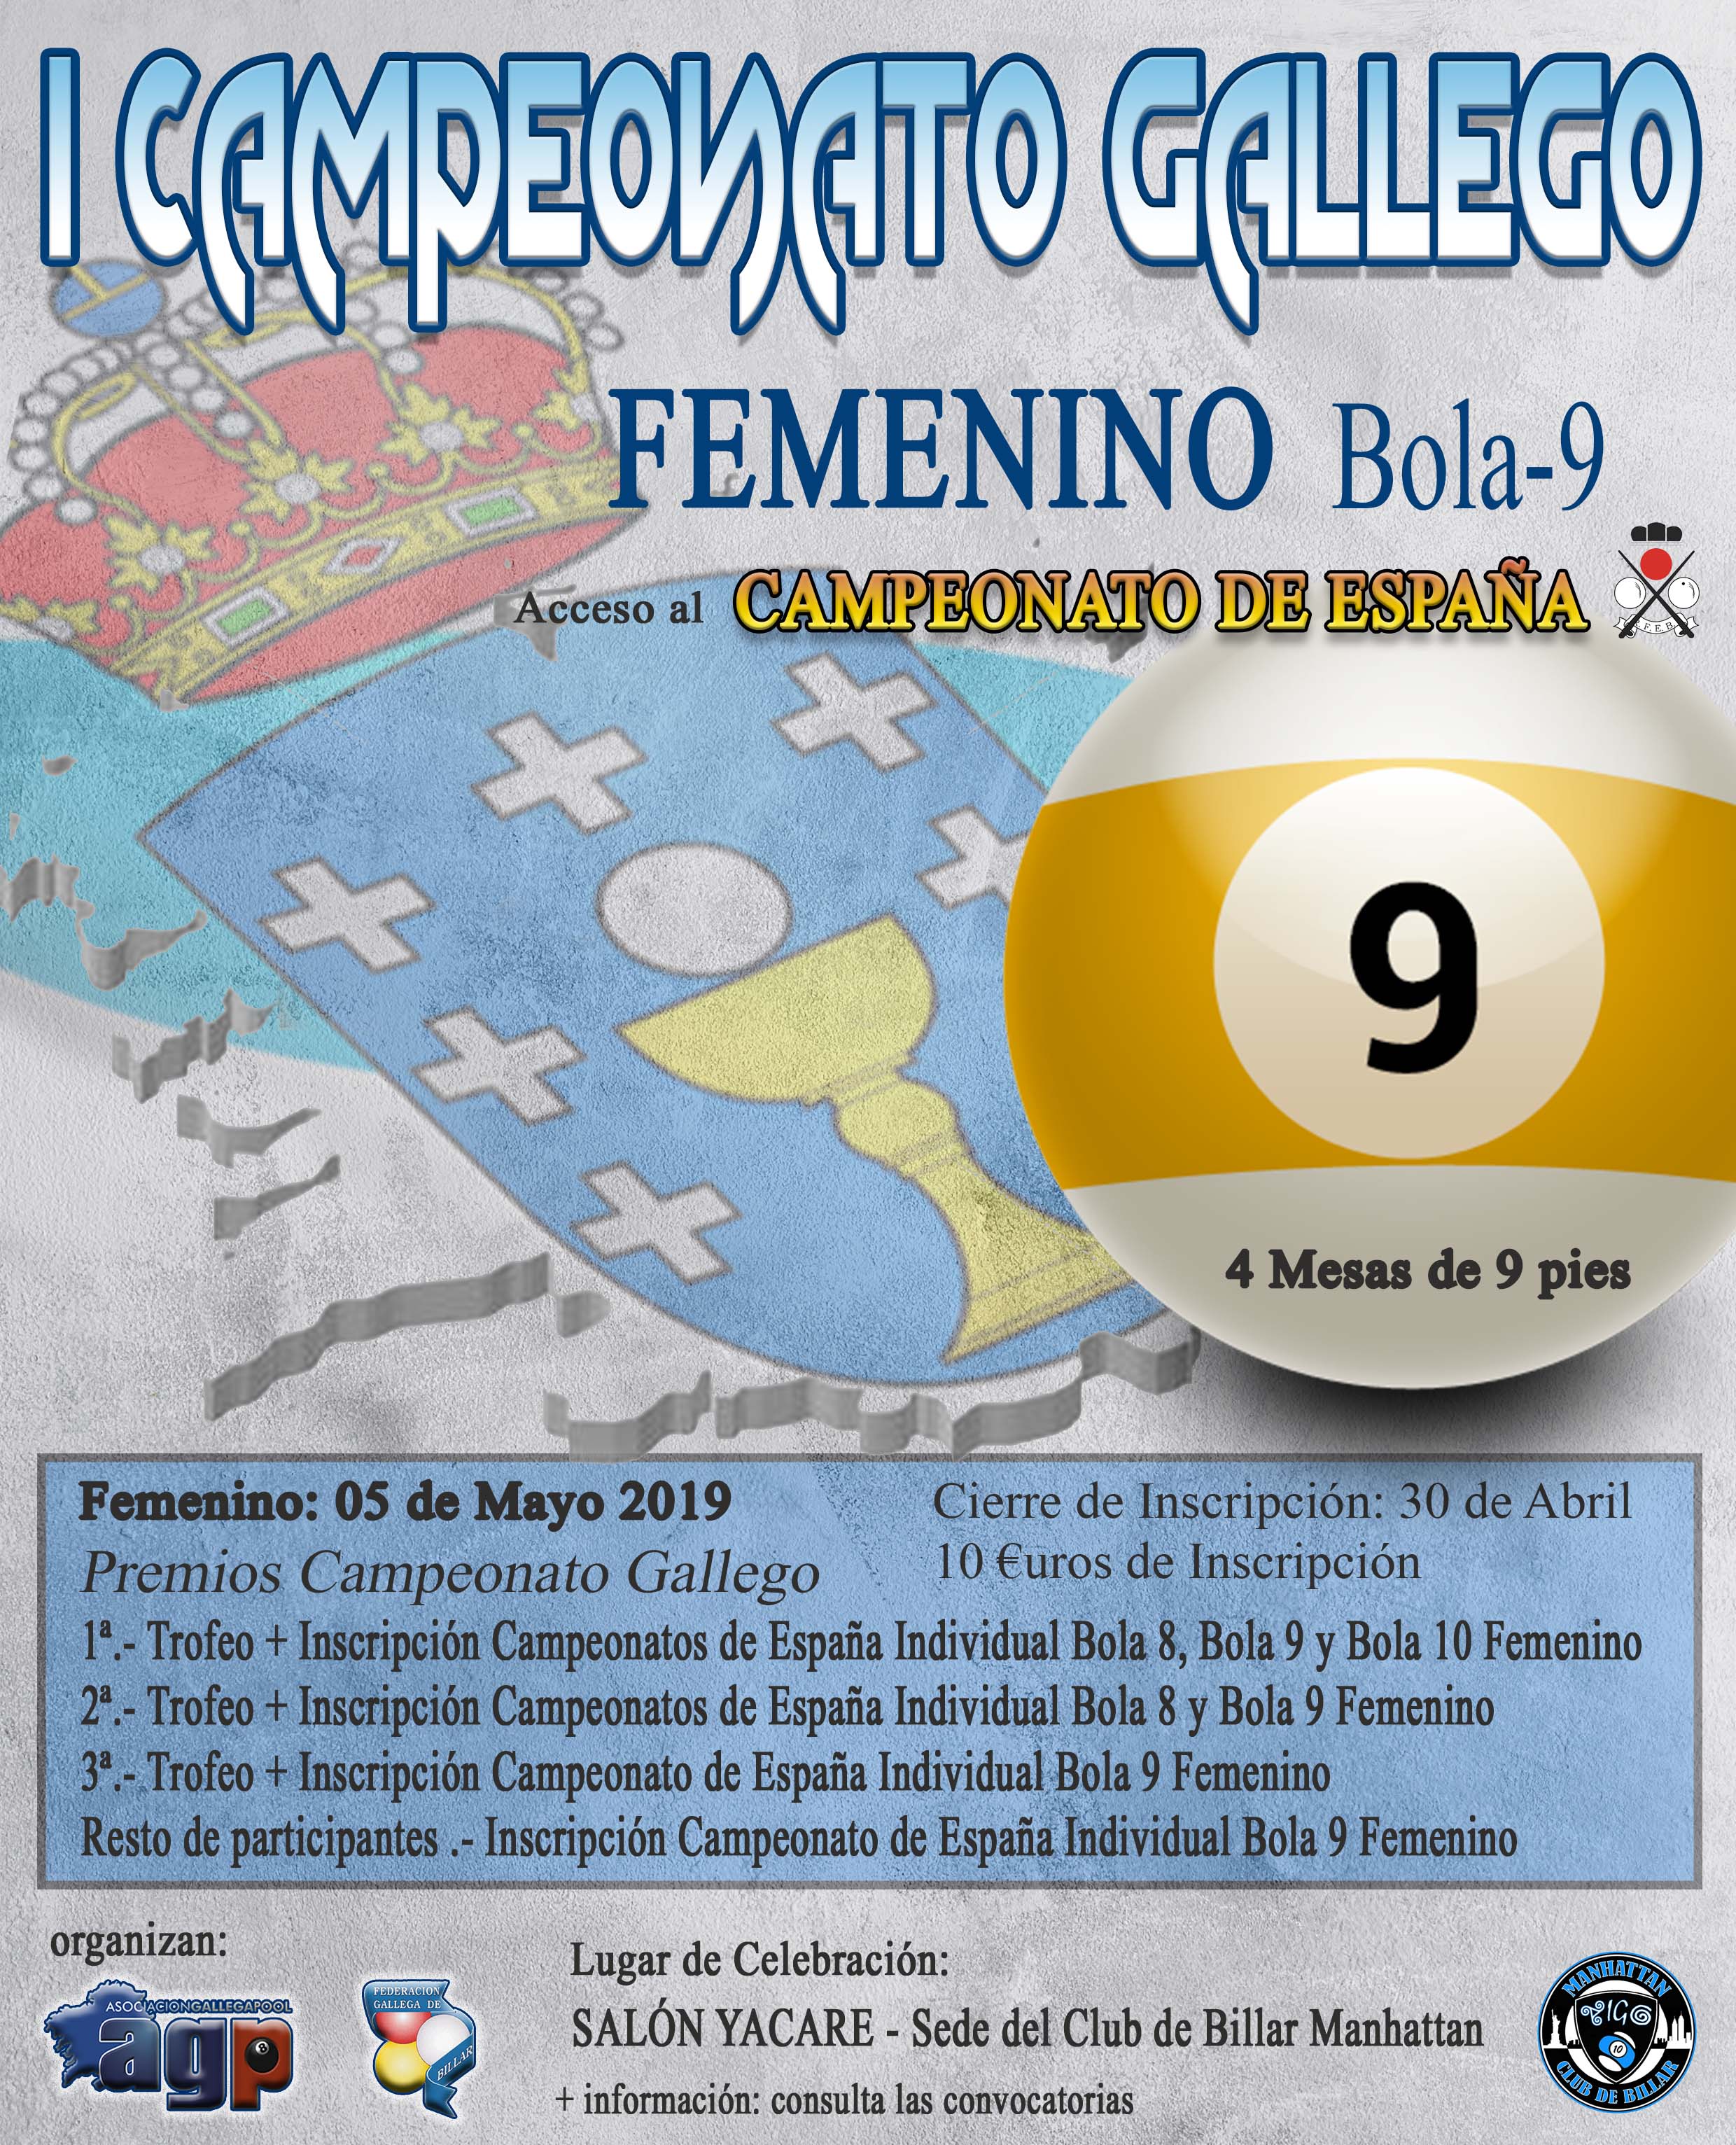 ATENCIN - Cambio de Fecha del Campeonato Gallego Femenino Bola-9